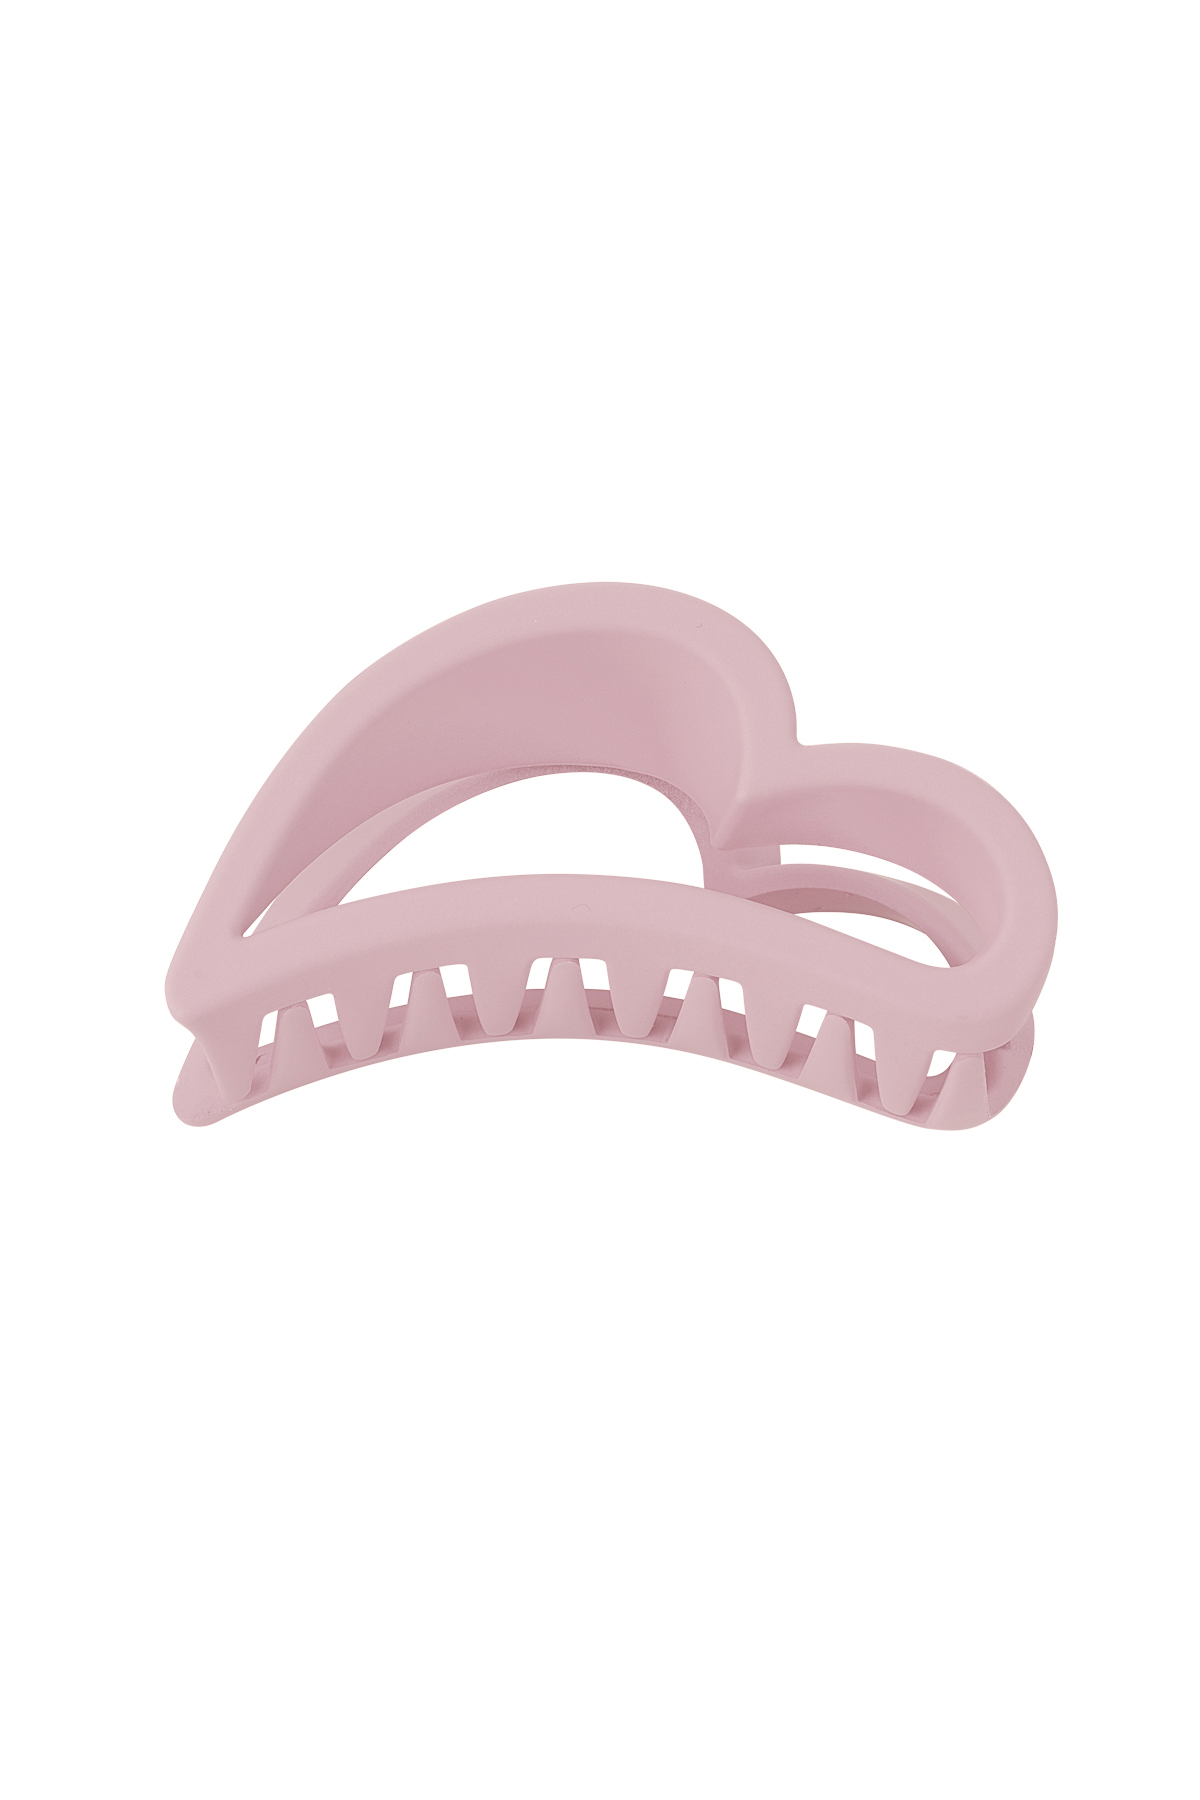 Fermaglio per capelli Wing - Plastica rosa pastello 